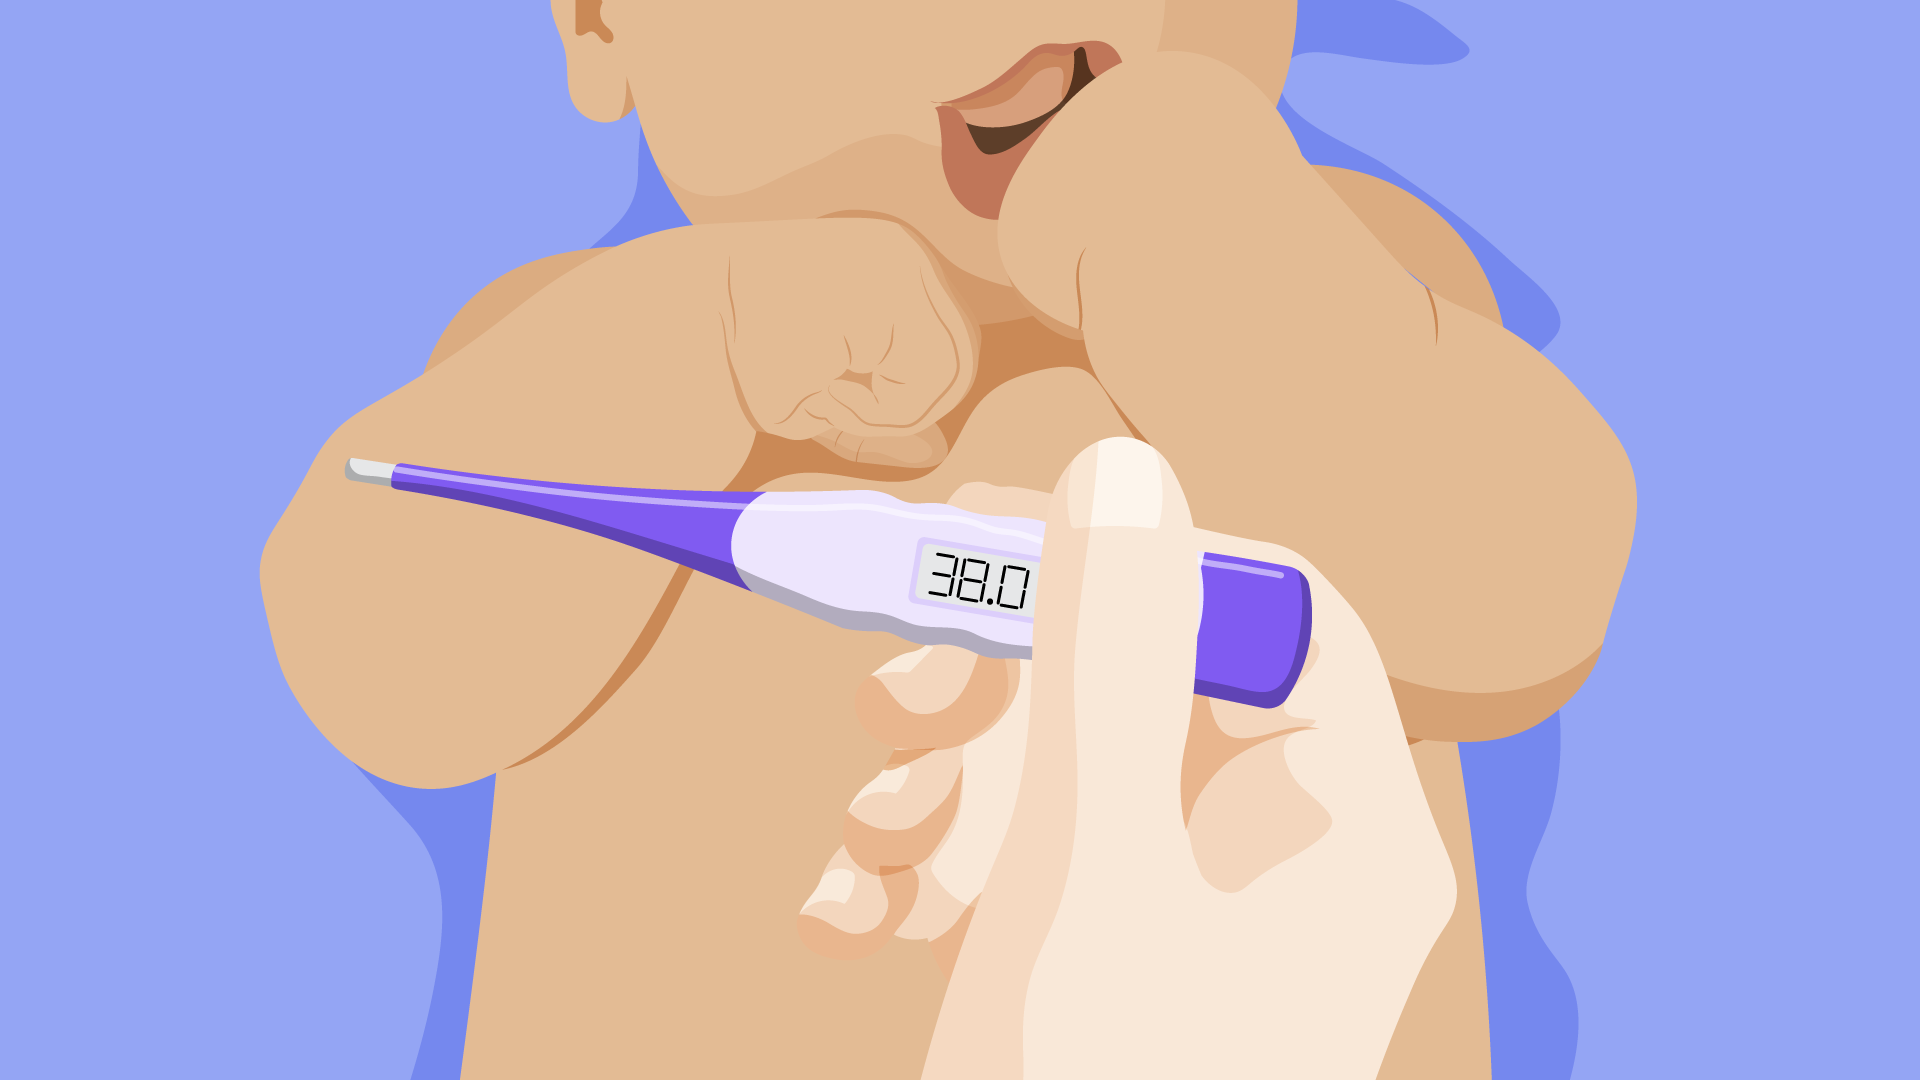 ilustração de um bebê deitado e um termômetro mostrando 38 graus